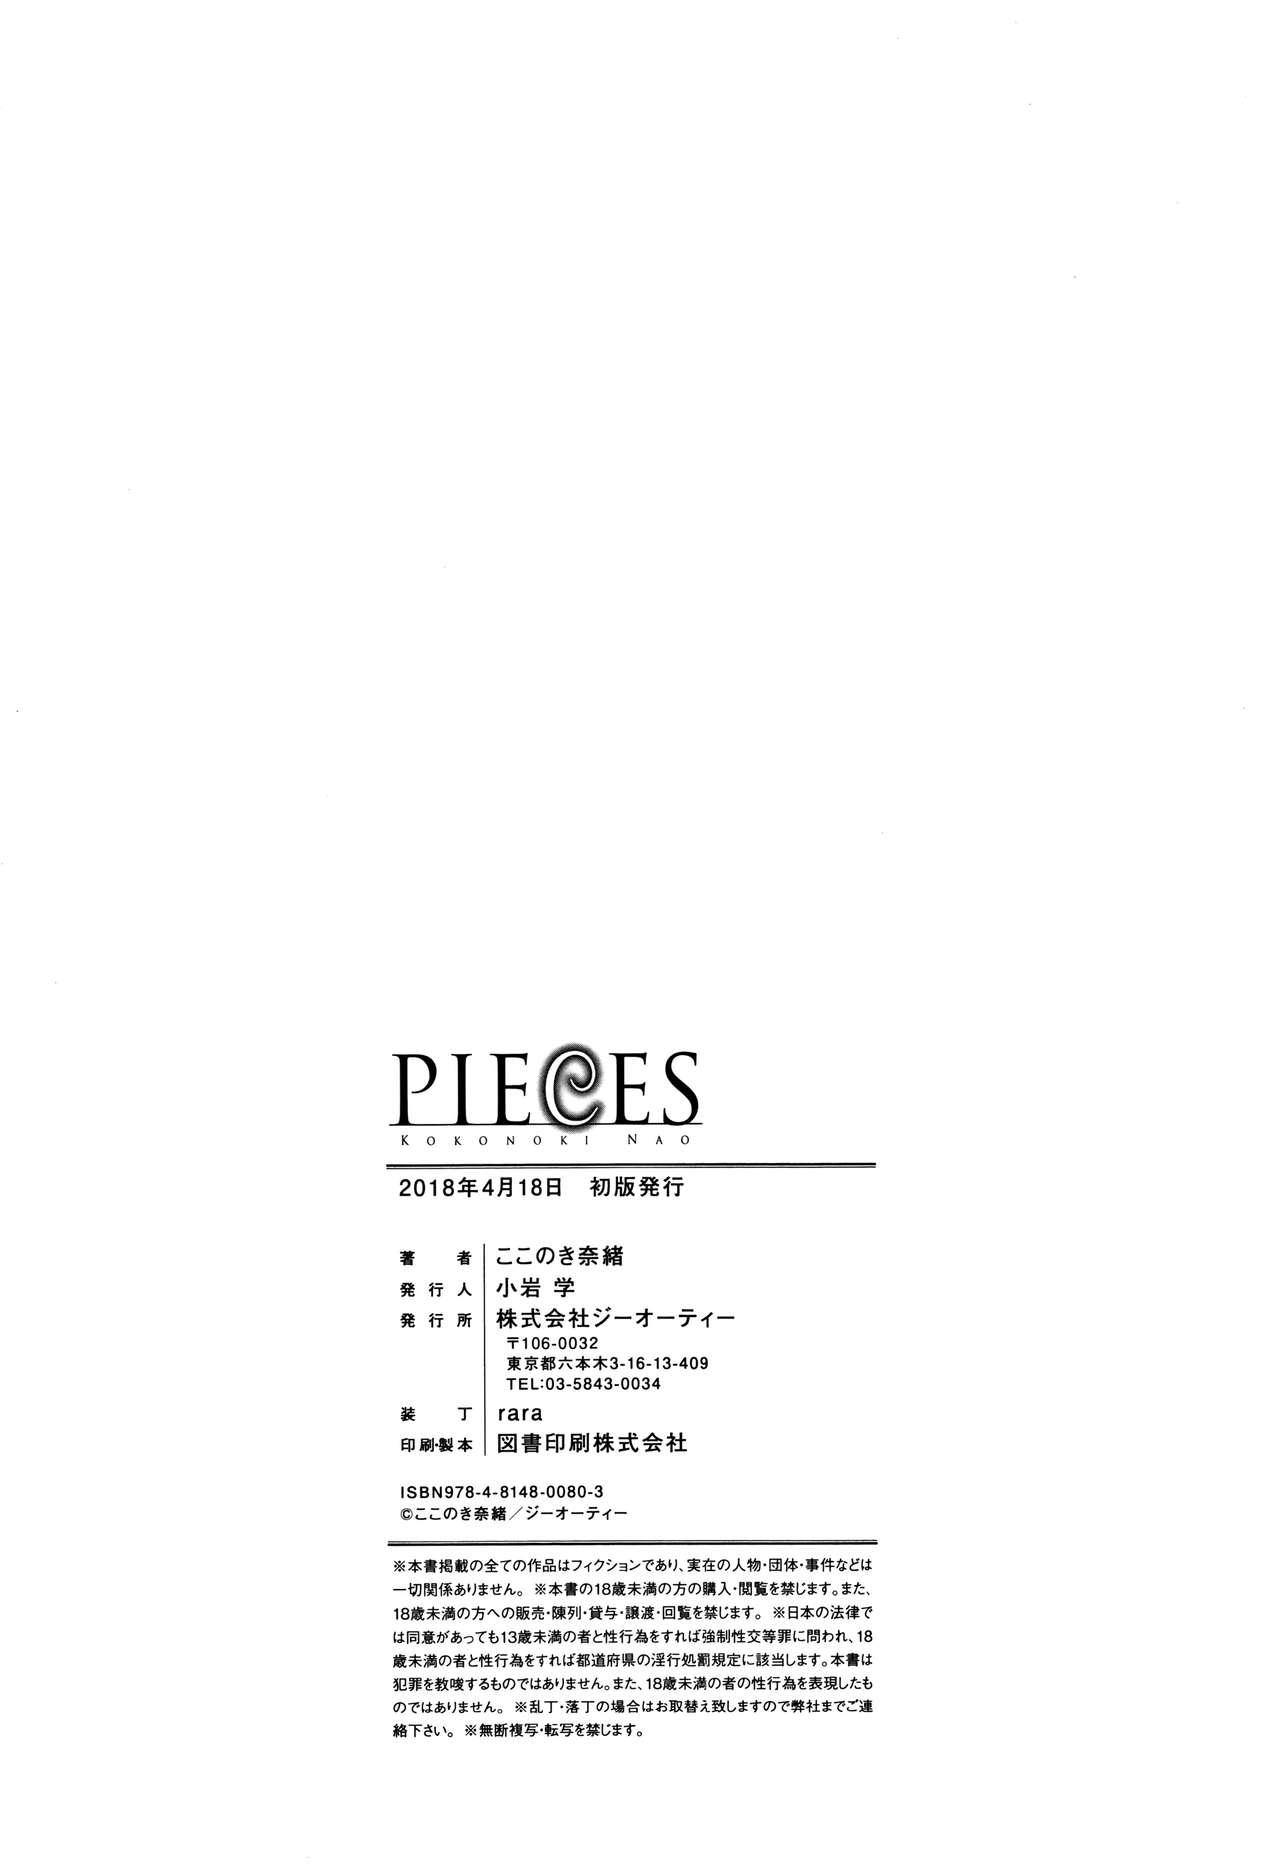 PIECES + Illust Card 251